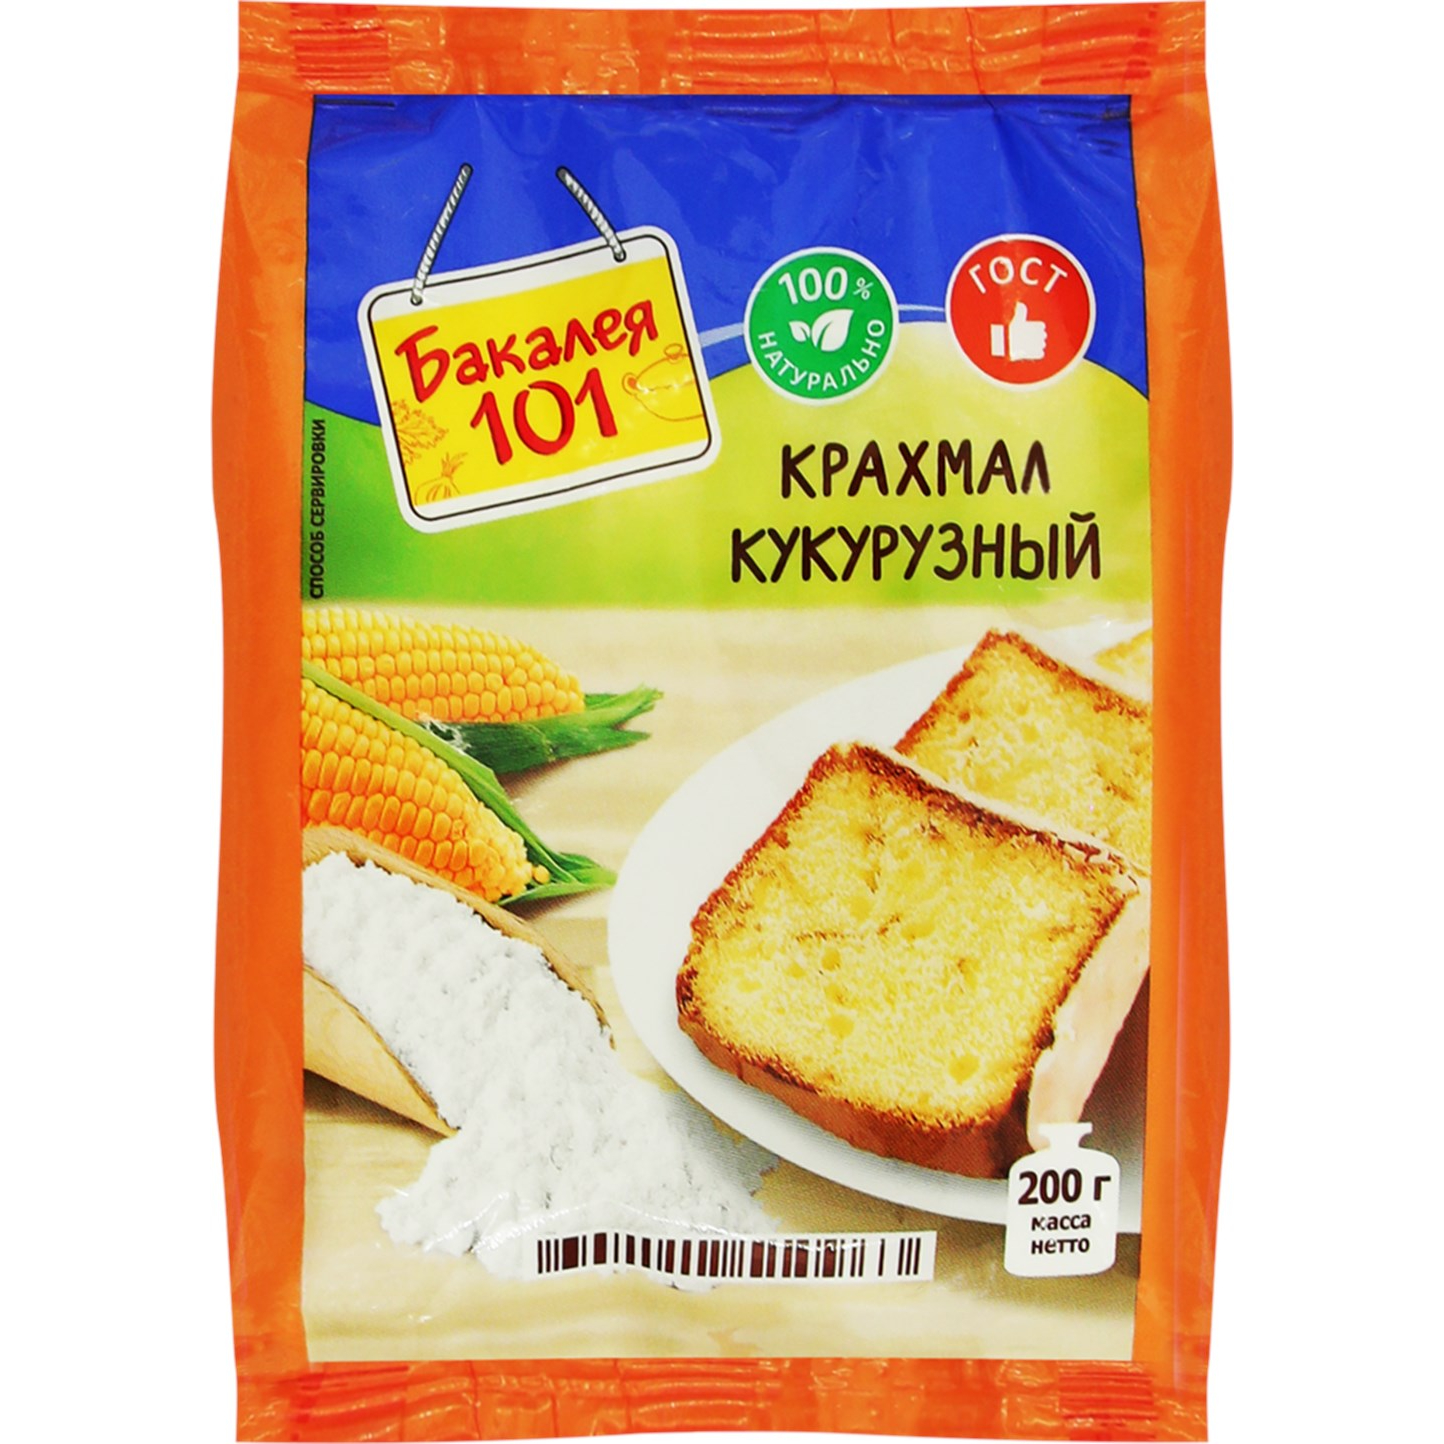 Крахмал кукурузный Русский продукт Бакалея 101 200 г цена и фото